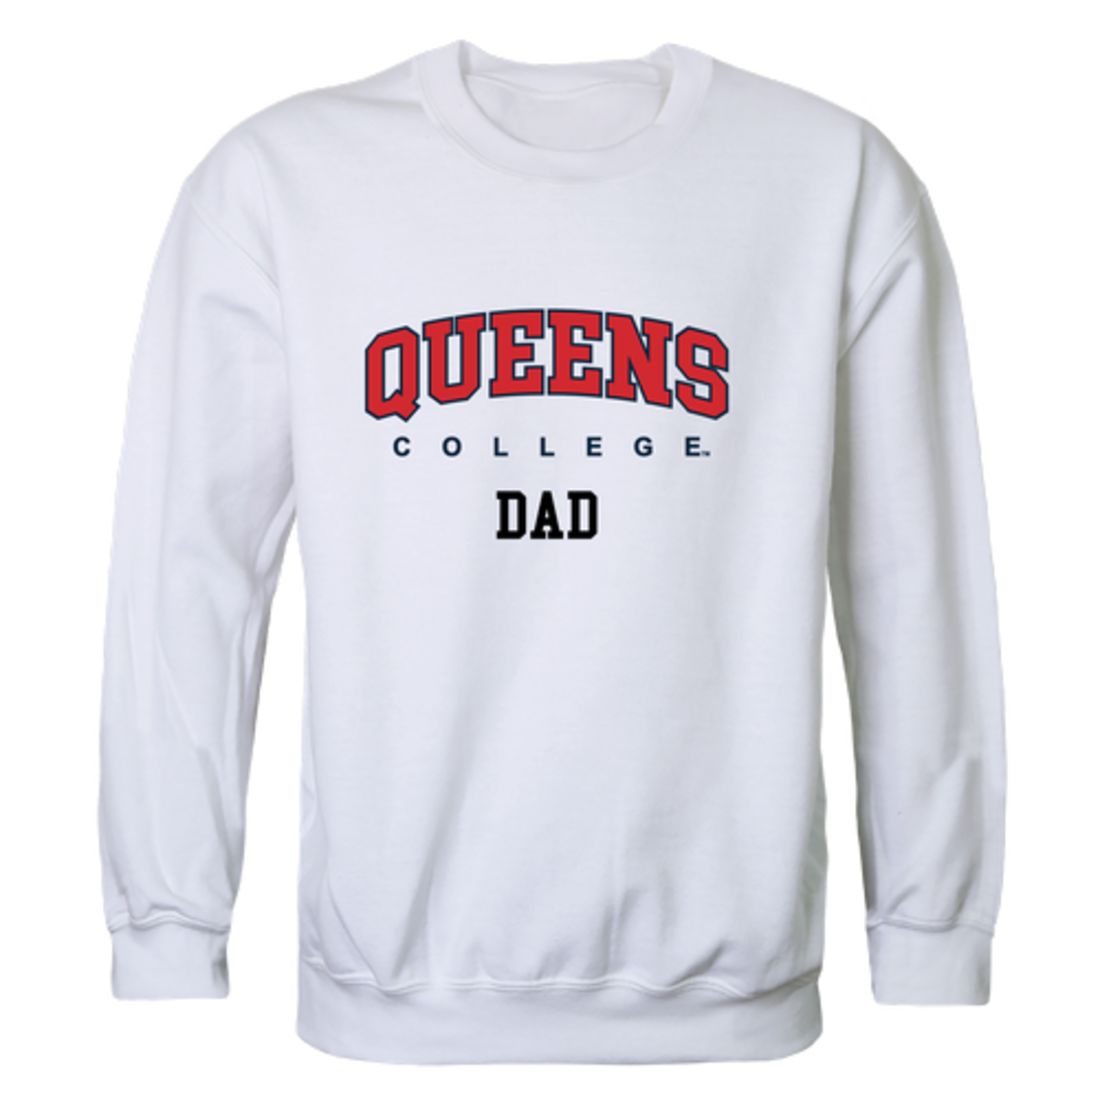 CUNY Queens College Knights Dad Fleece Crewneck Pullover Sweatshirt Heather Grey-Campus-Wardrobe